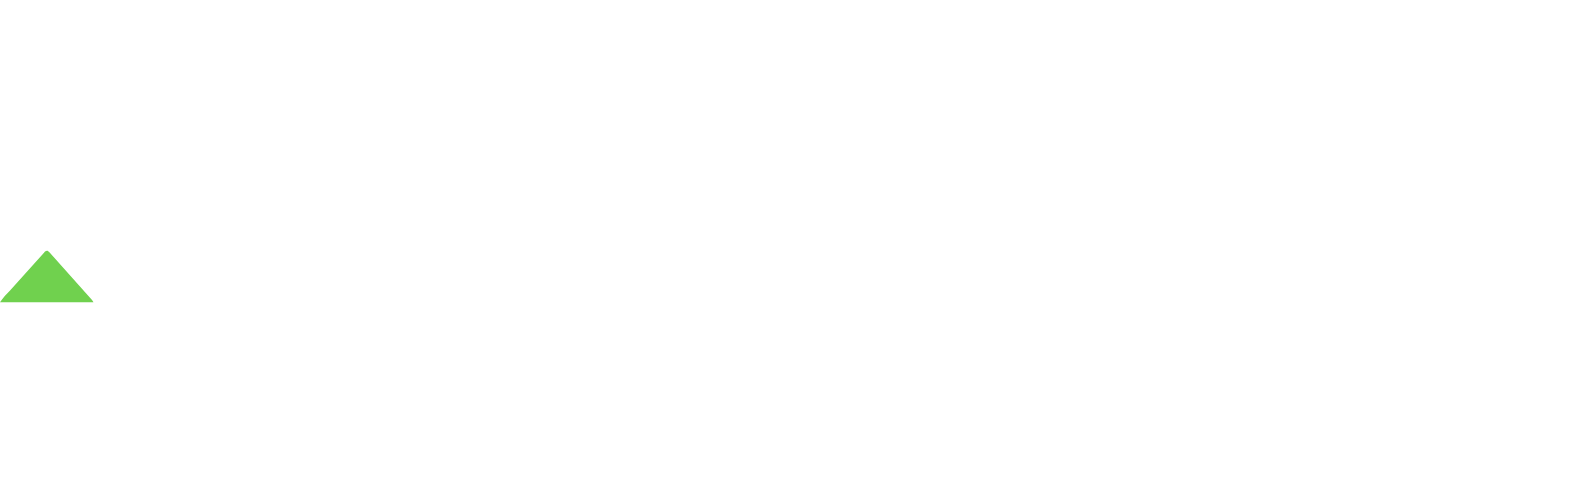 Atlantica logo large for dark backgrounds (transparent PNG)